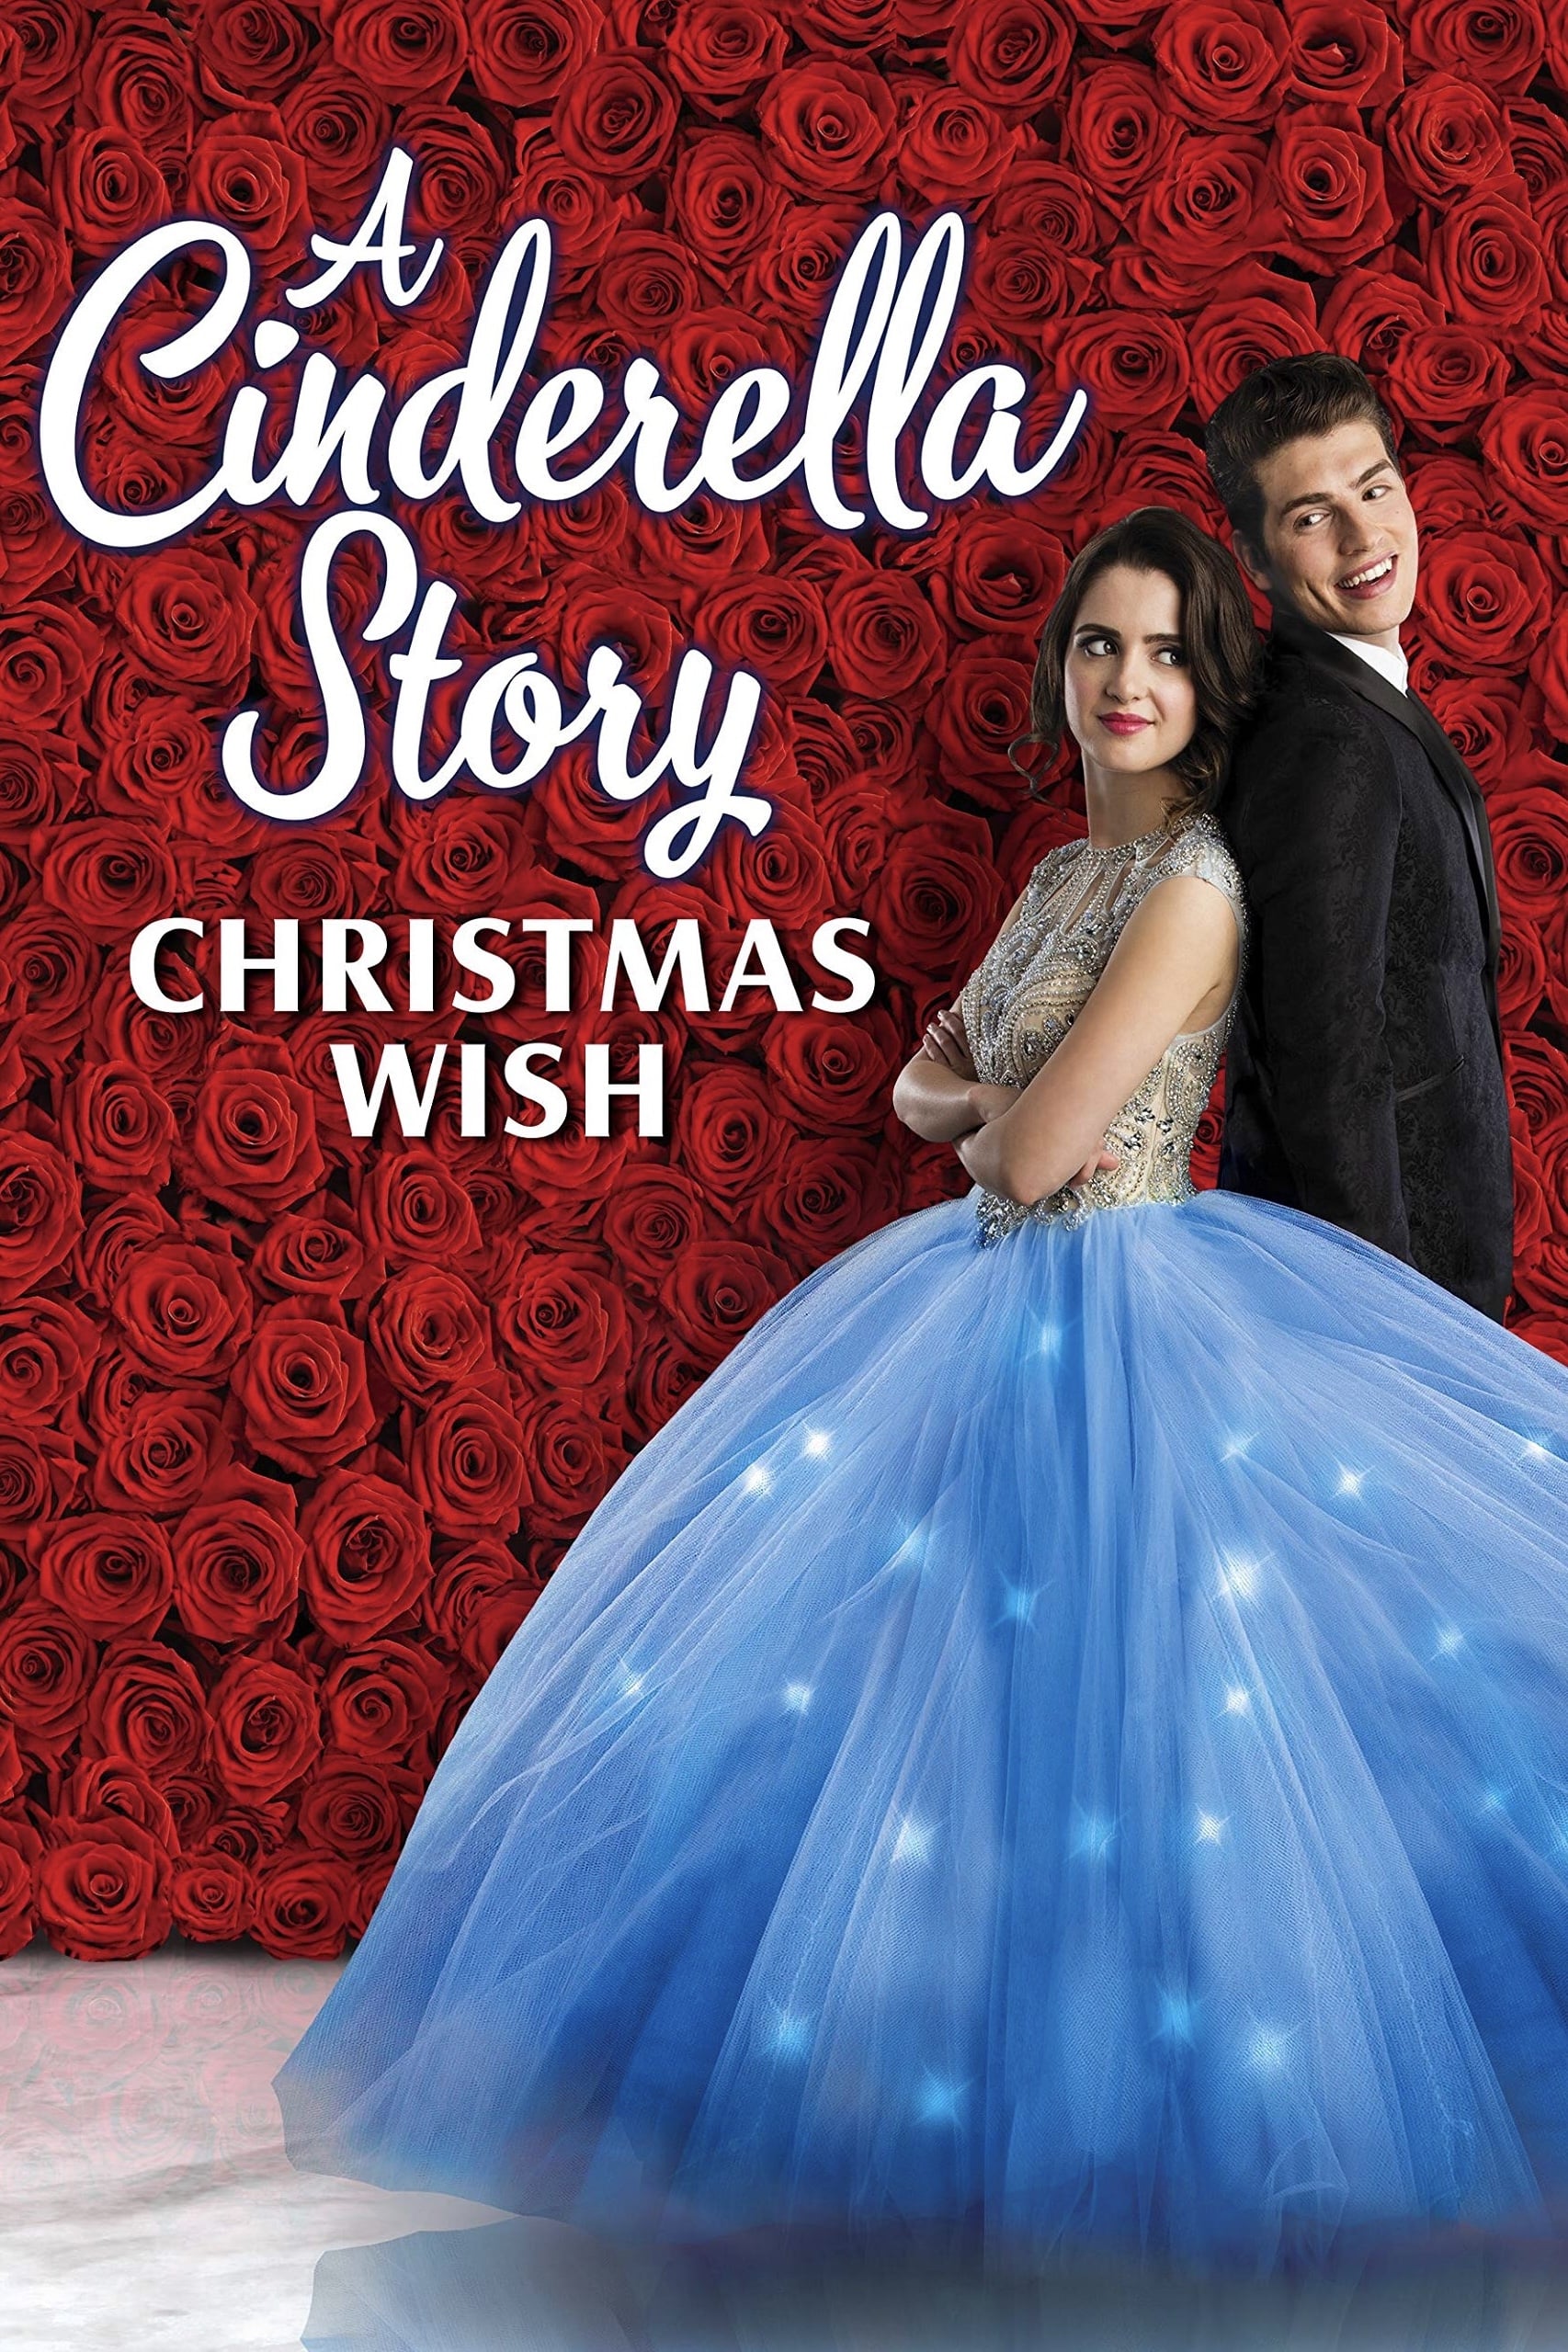 Cinderella Story - Ein Weihnachtswunsch